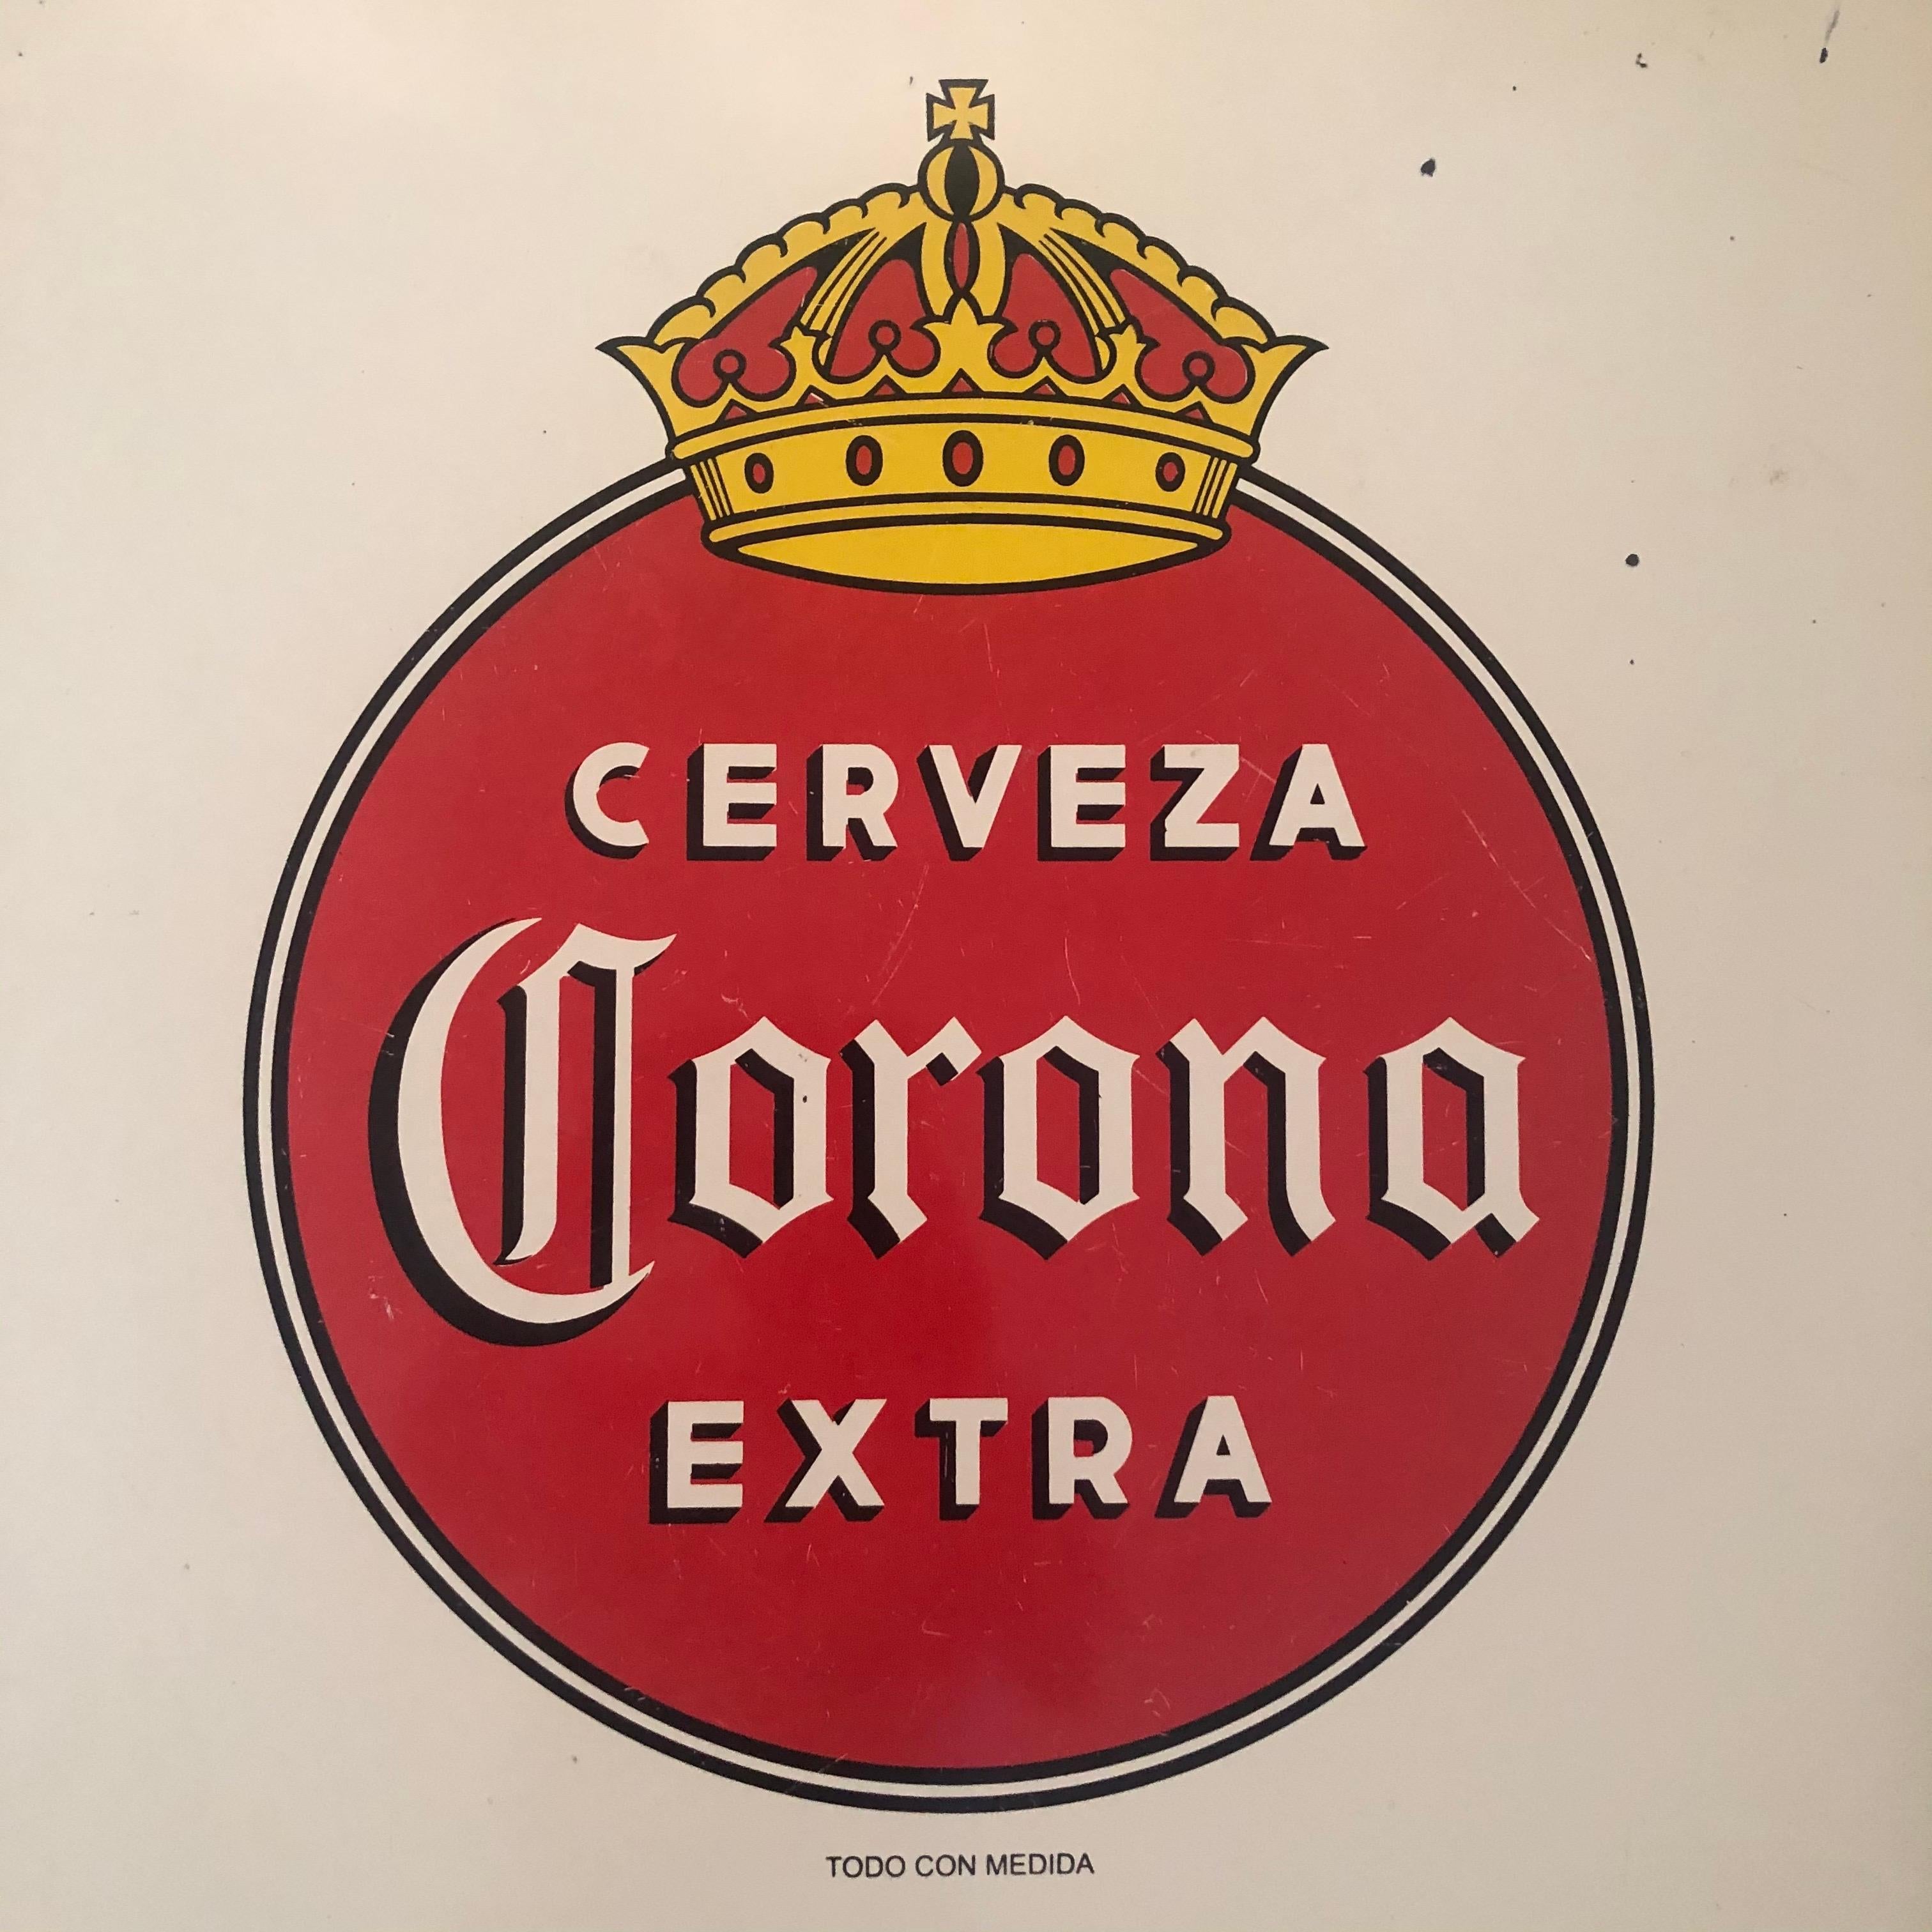 corona extra sign